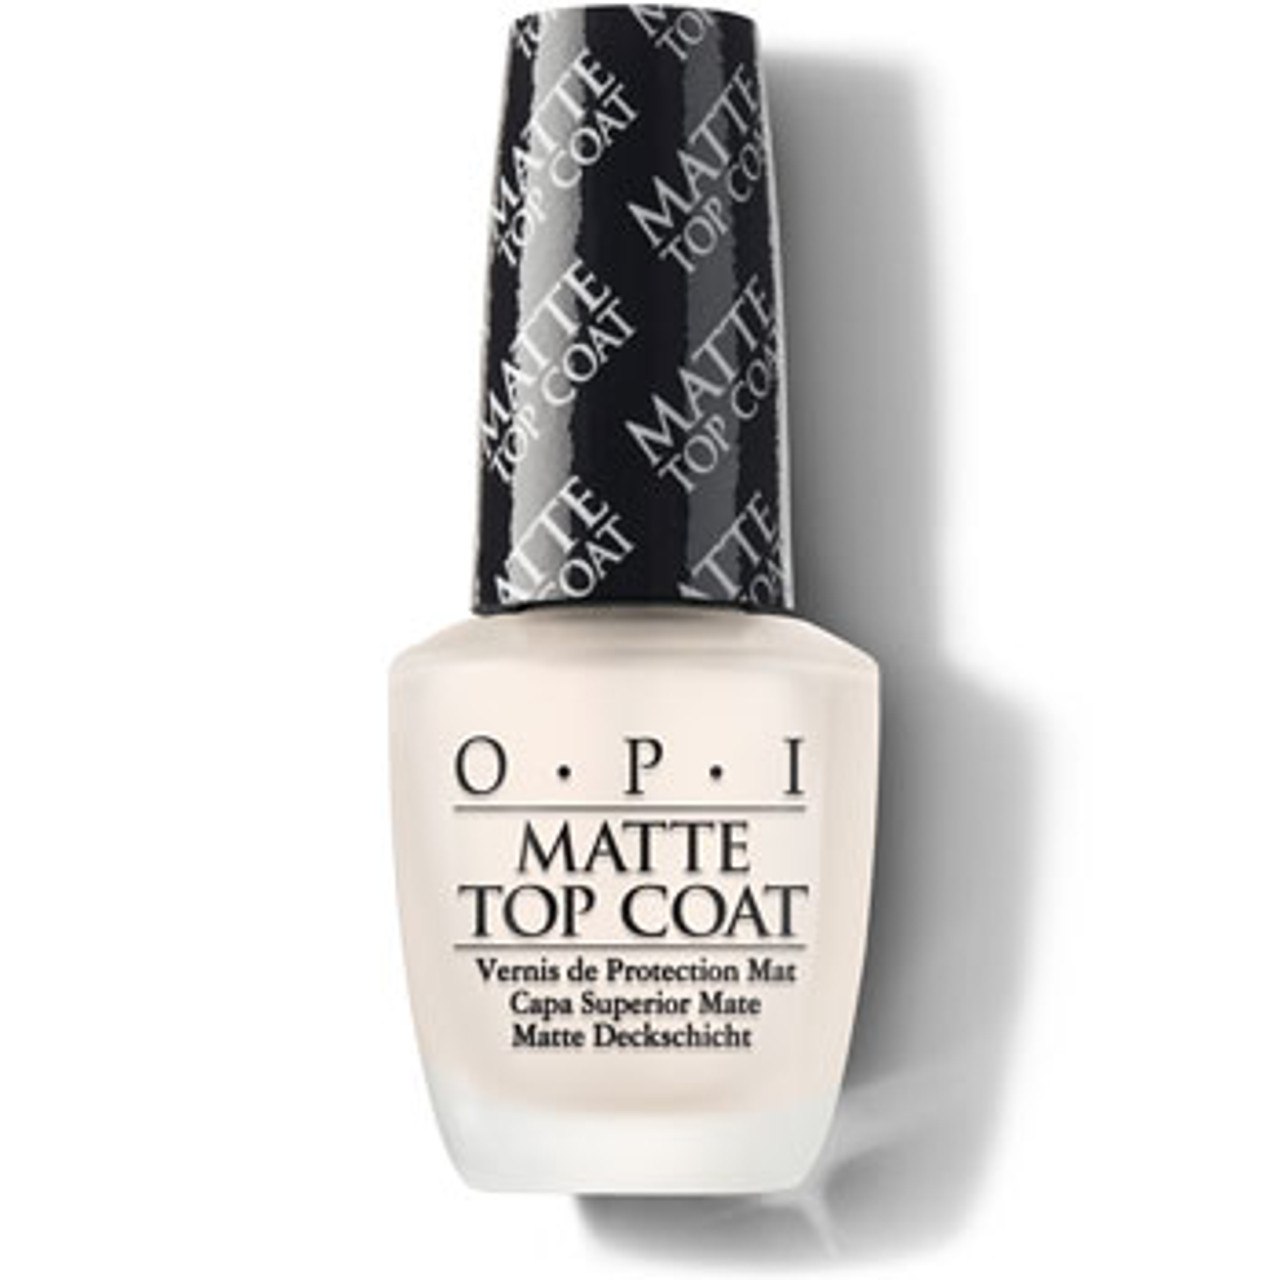 OPI Nail Treatment Matte Top Coat - 0.5 fl oz